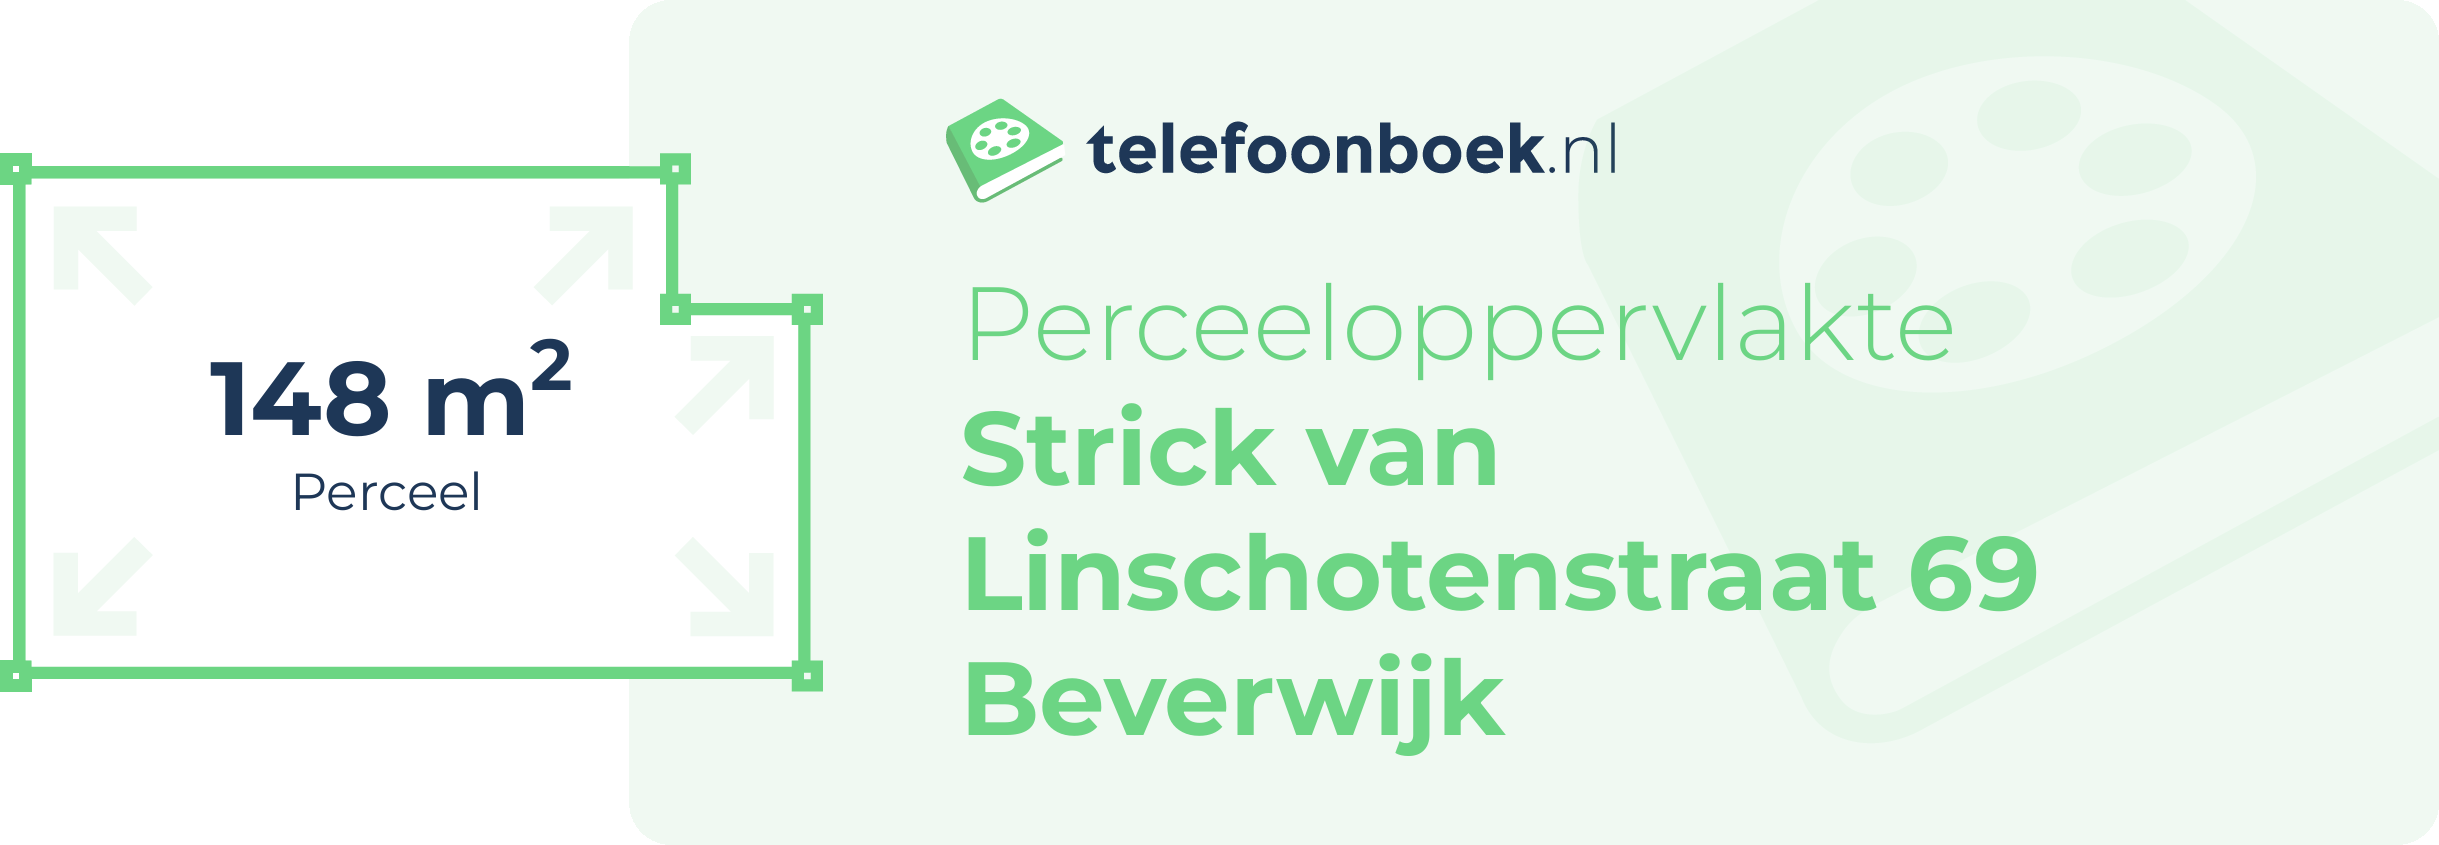 Perceeloppervlakte Strick Van Linschotenstraat 69 Beverwijk